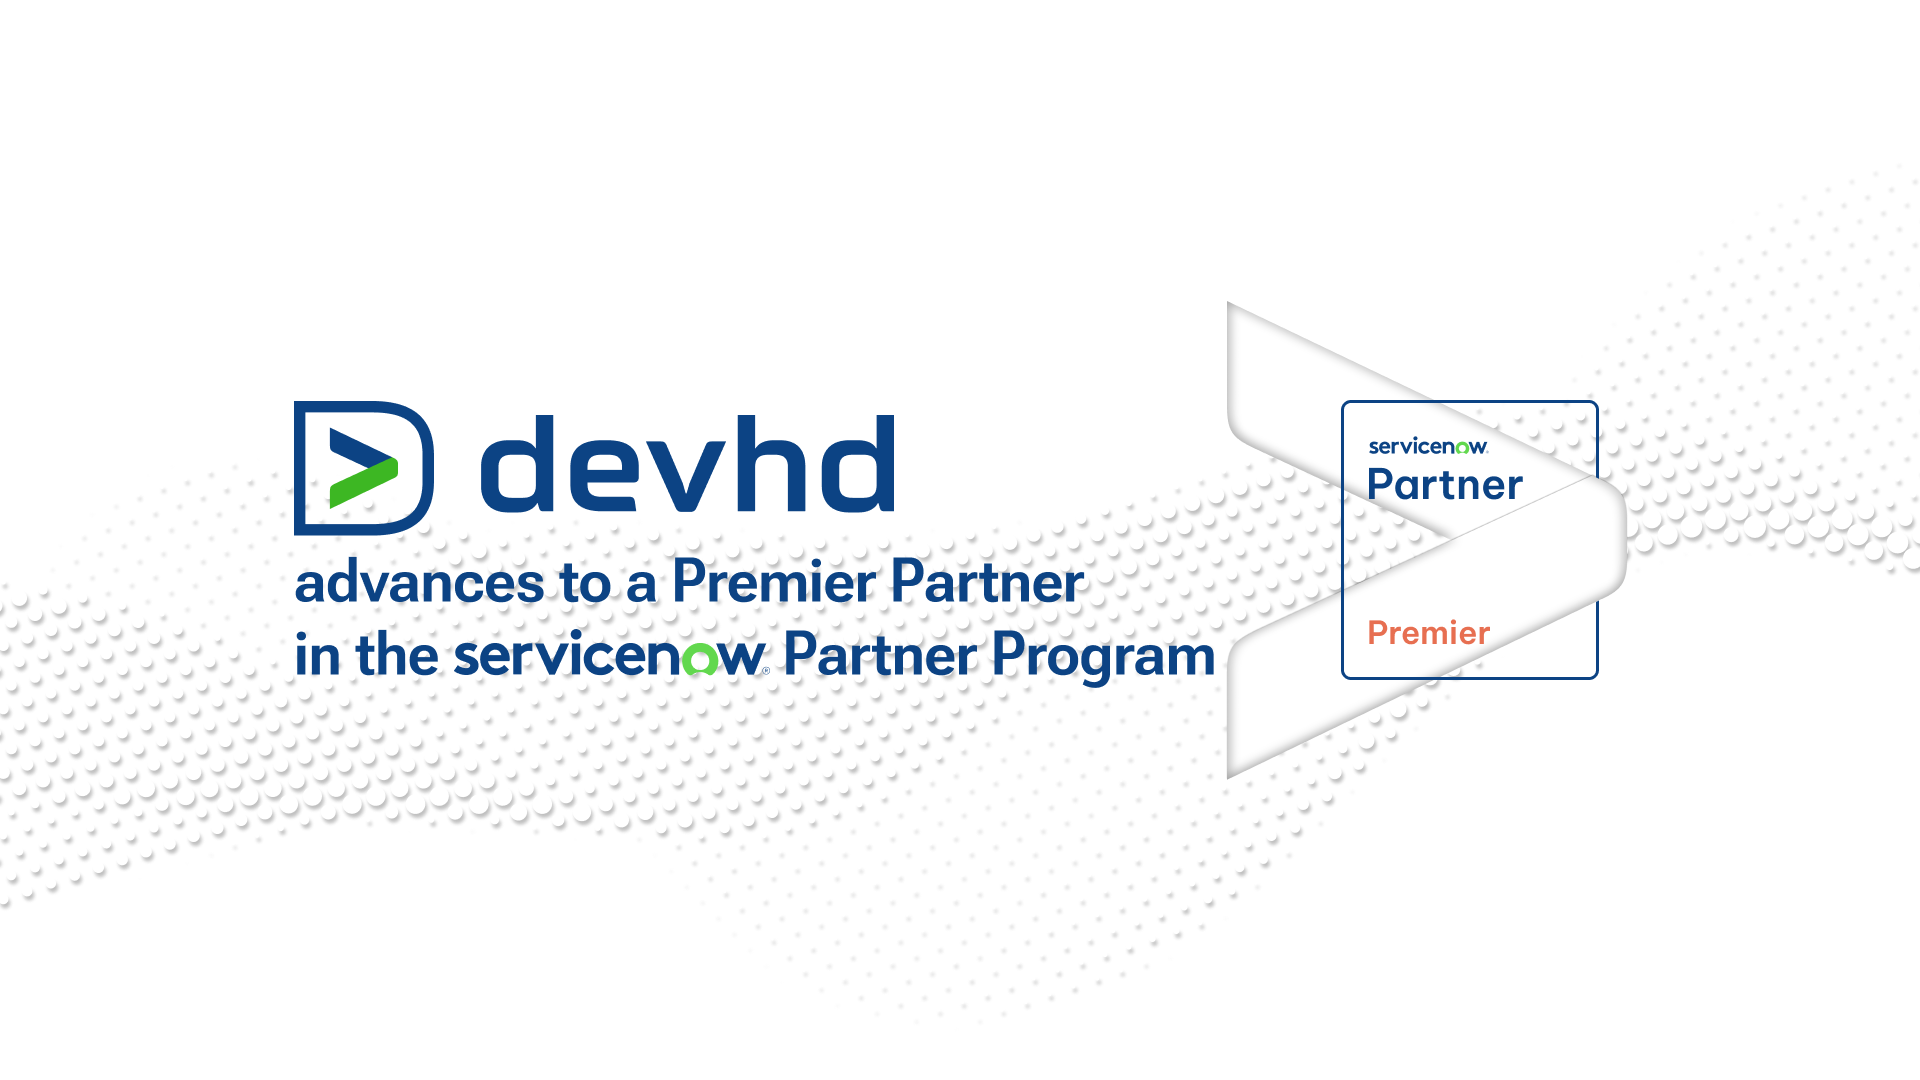 Devhd, desemnată Premier Partner ServiceNow. 100% din veniturile companiei provin din export